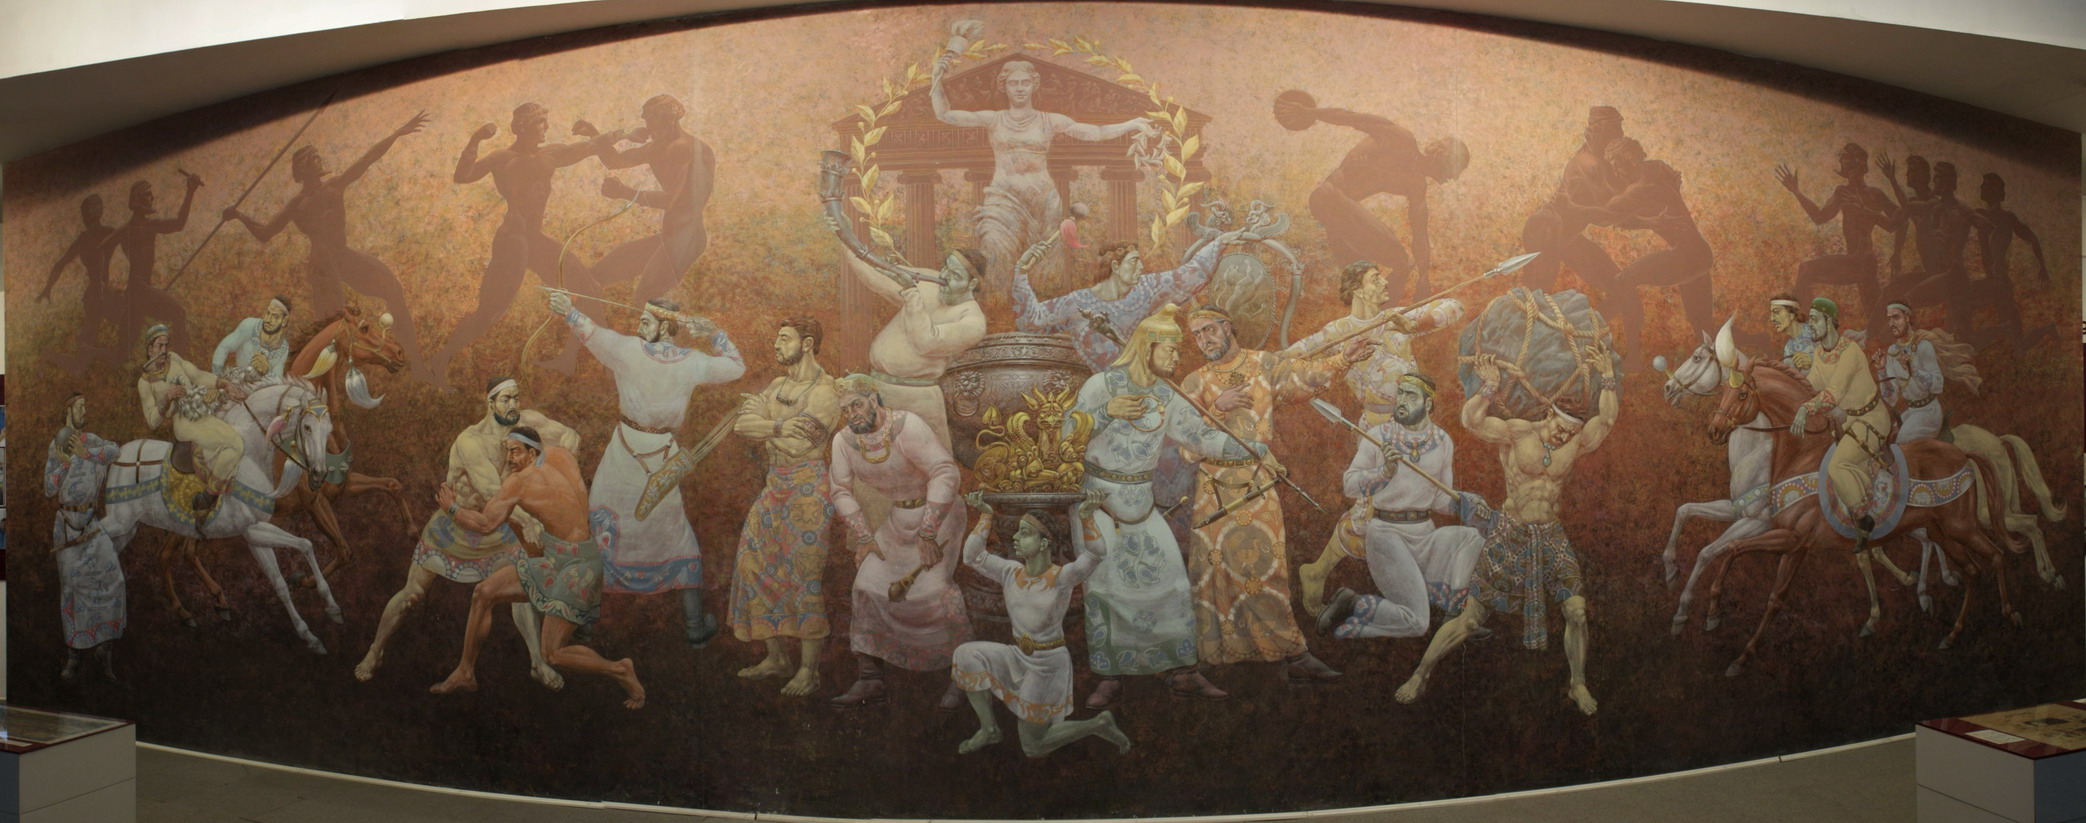 Панорама "Спортивные игры древней Бактрии", 1996.  Музей Олимпийской славы. Ташкент